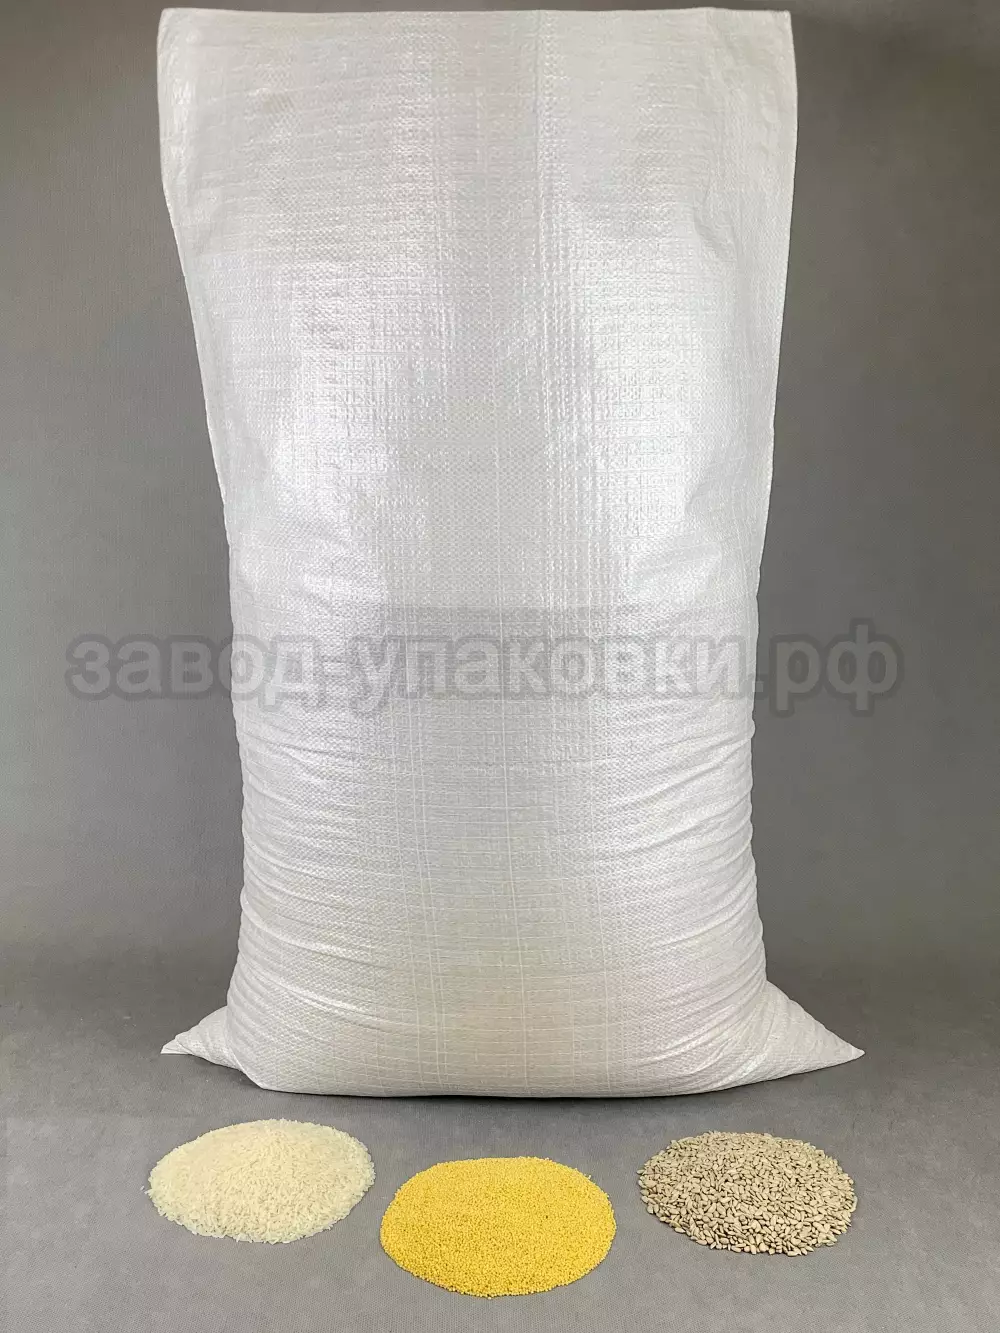 Мешки полипропиленовые плотные 85x120 см на 60-70 кг